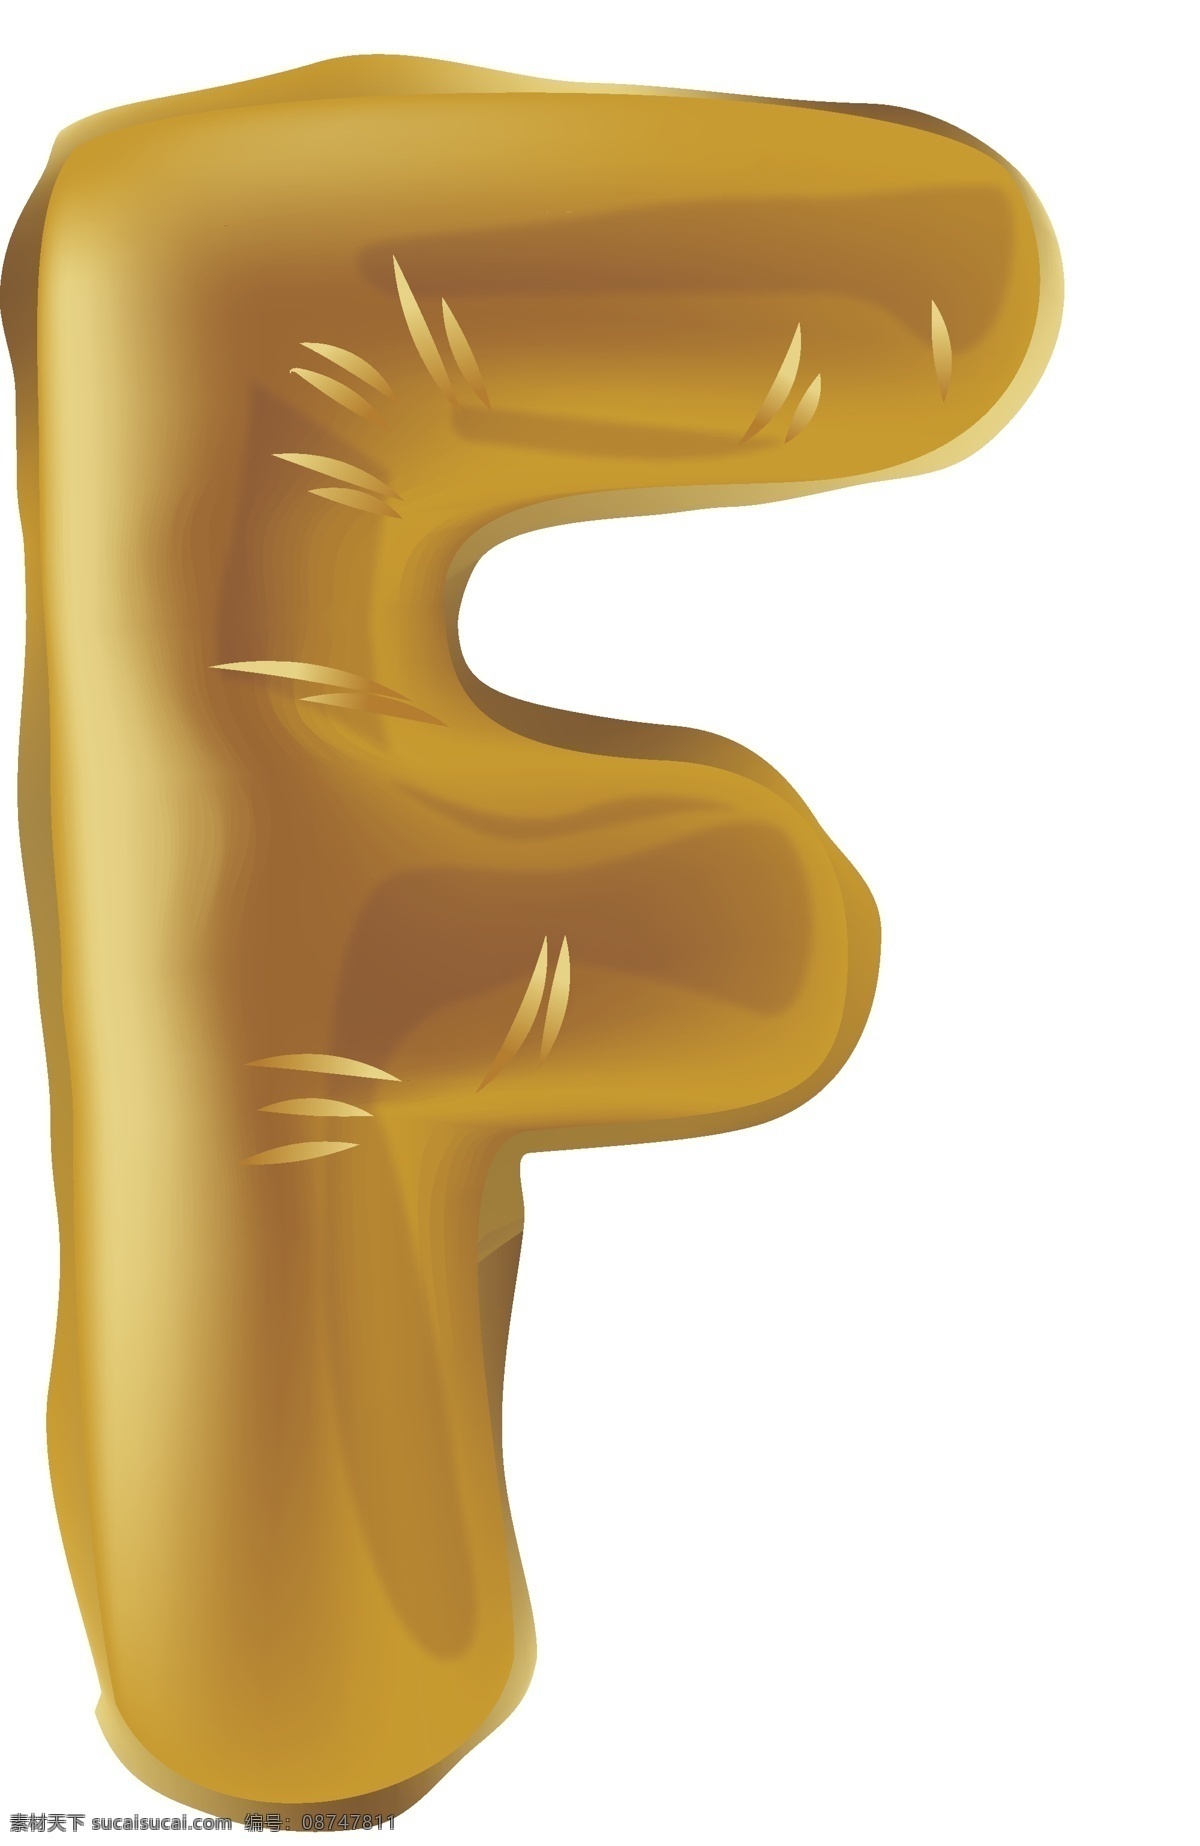 创意 气球 节日 字母 f 金色 金色气球 字母f 创意金色 气球节日